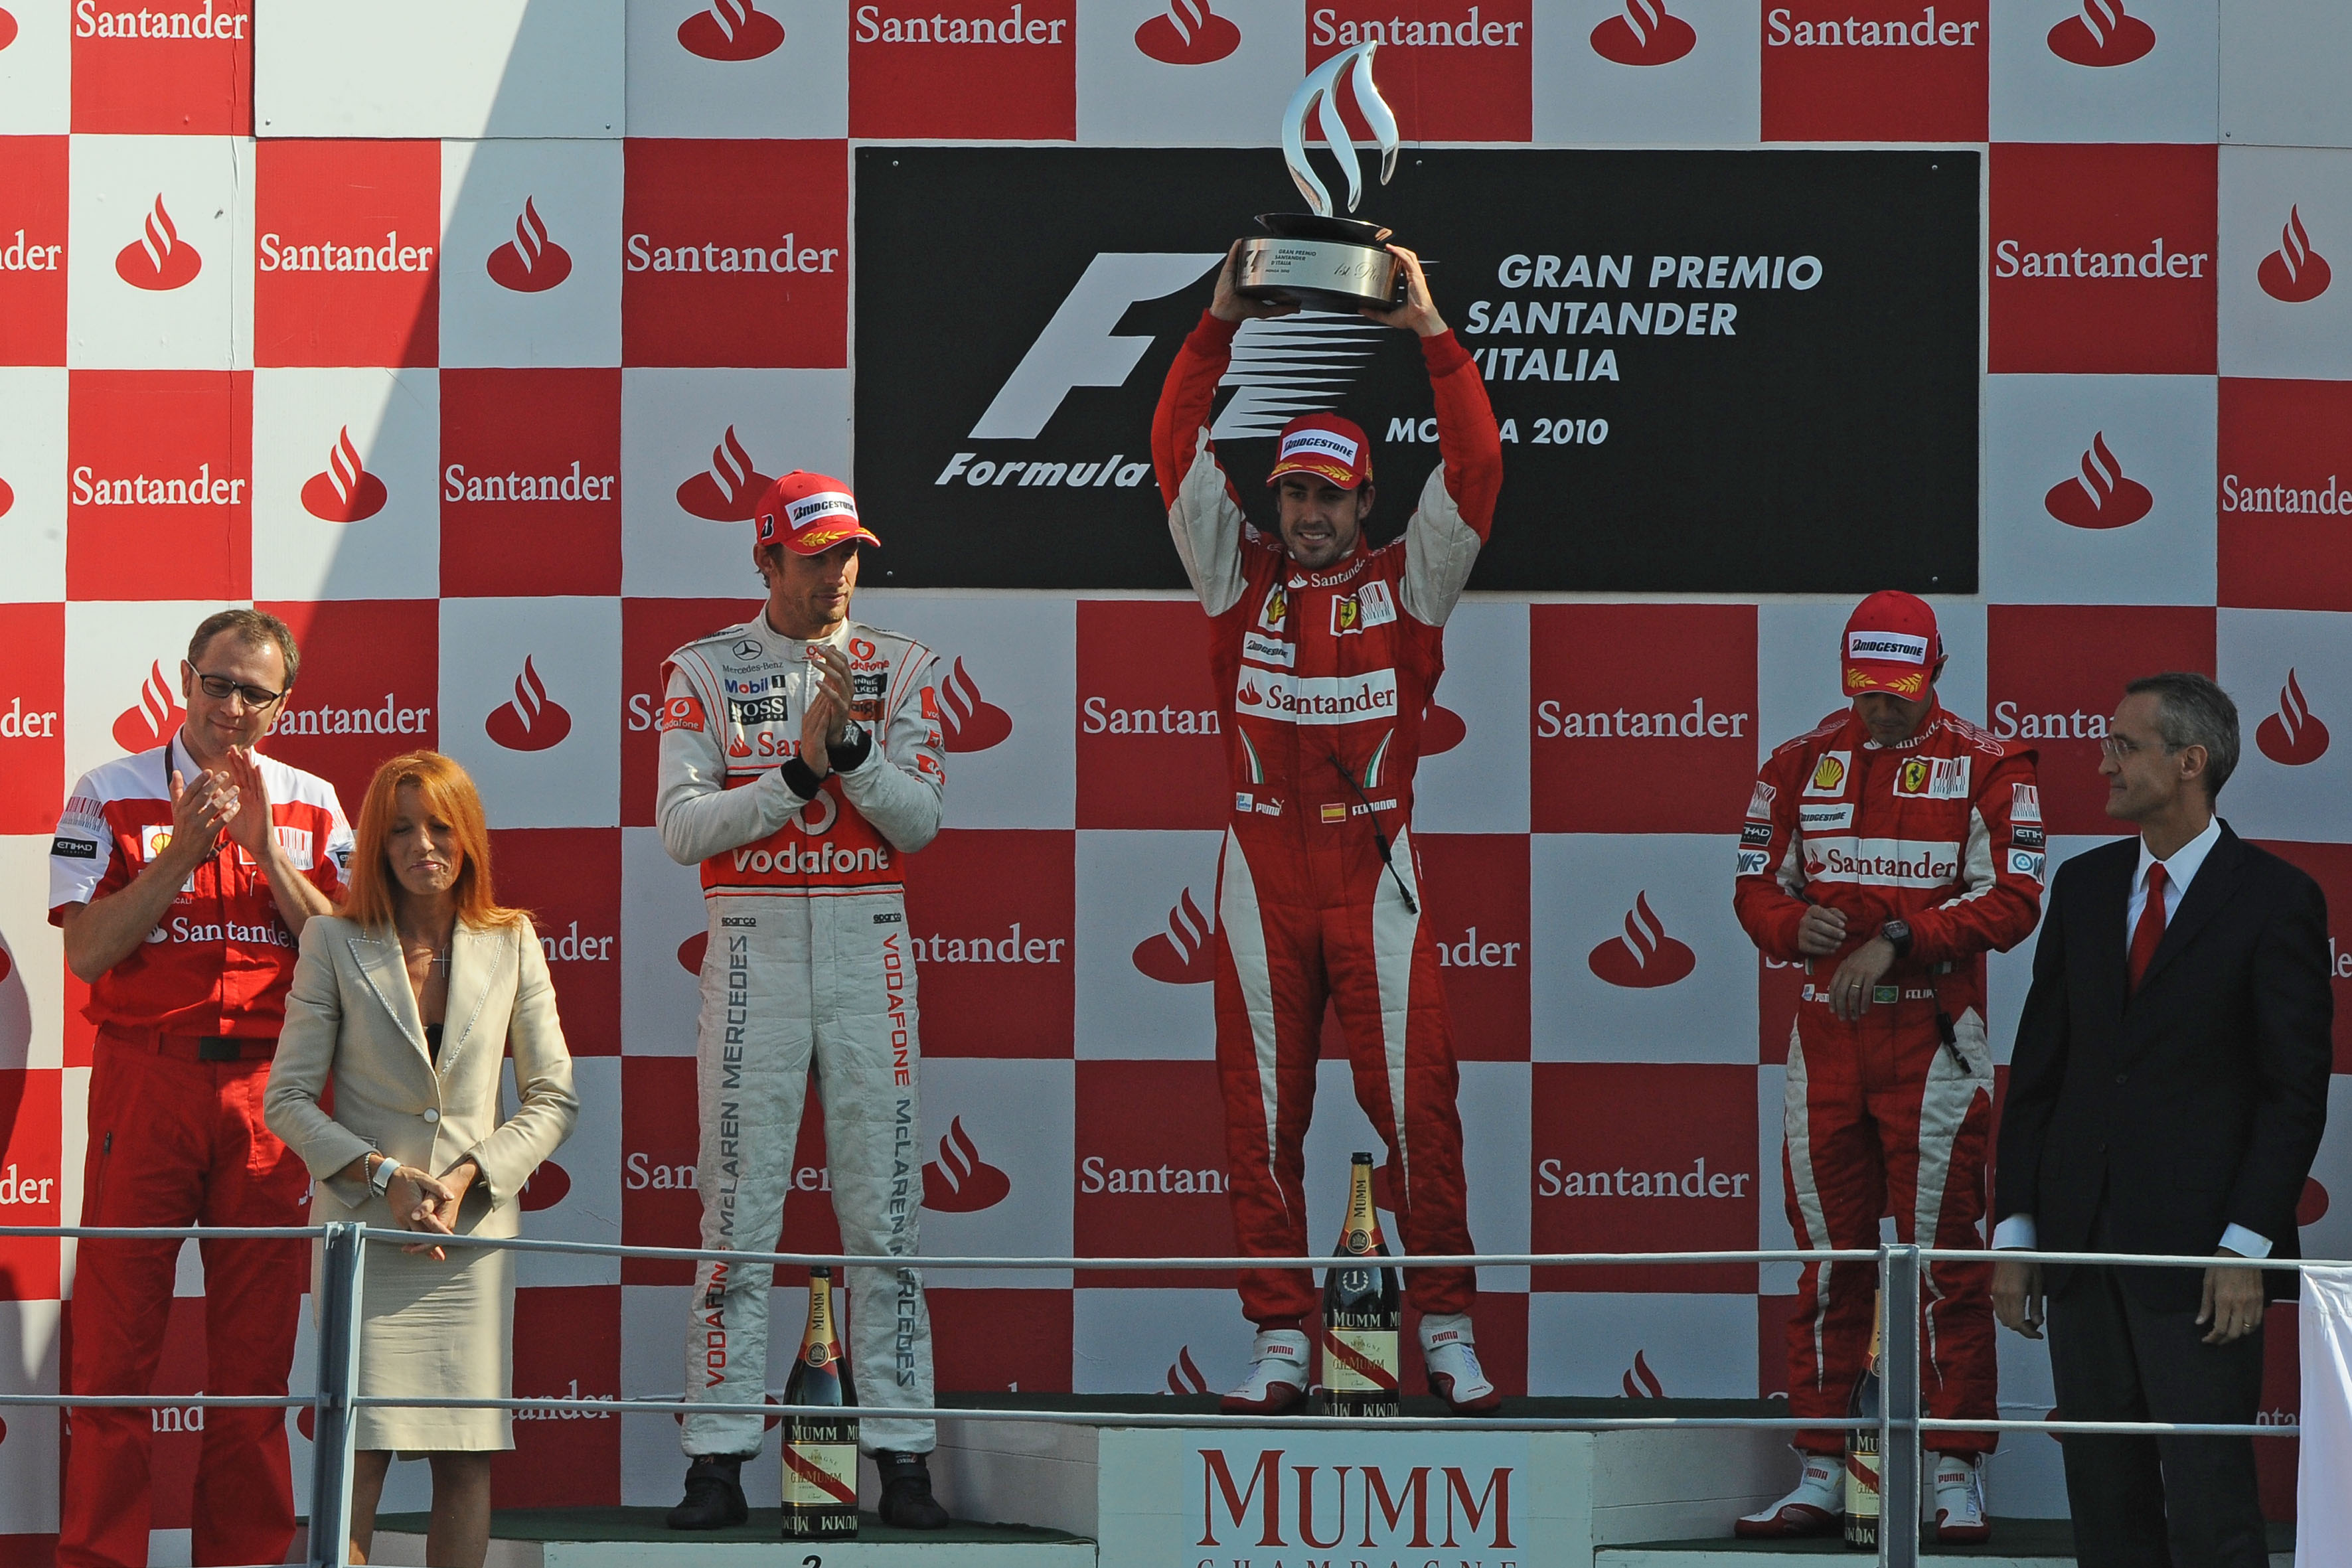 2010 Italian grand prix podium